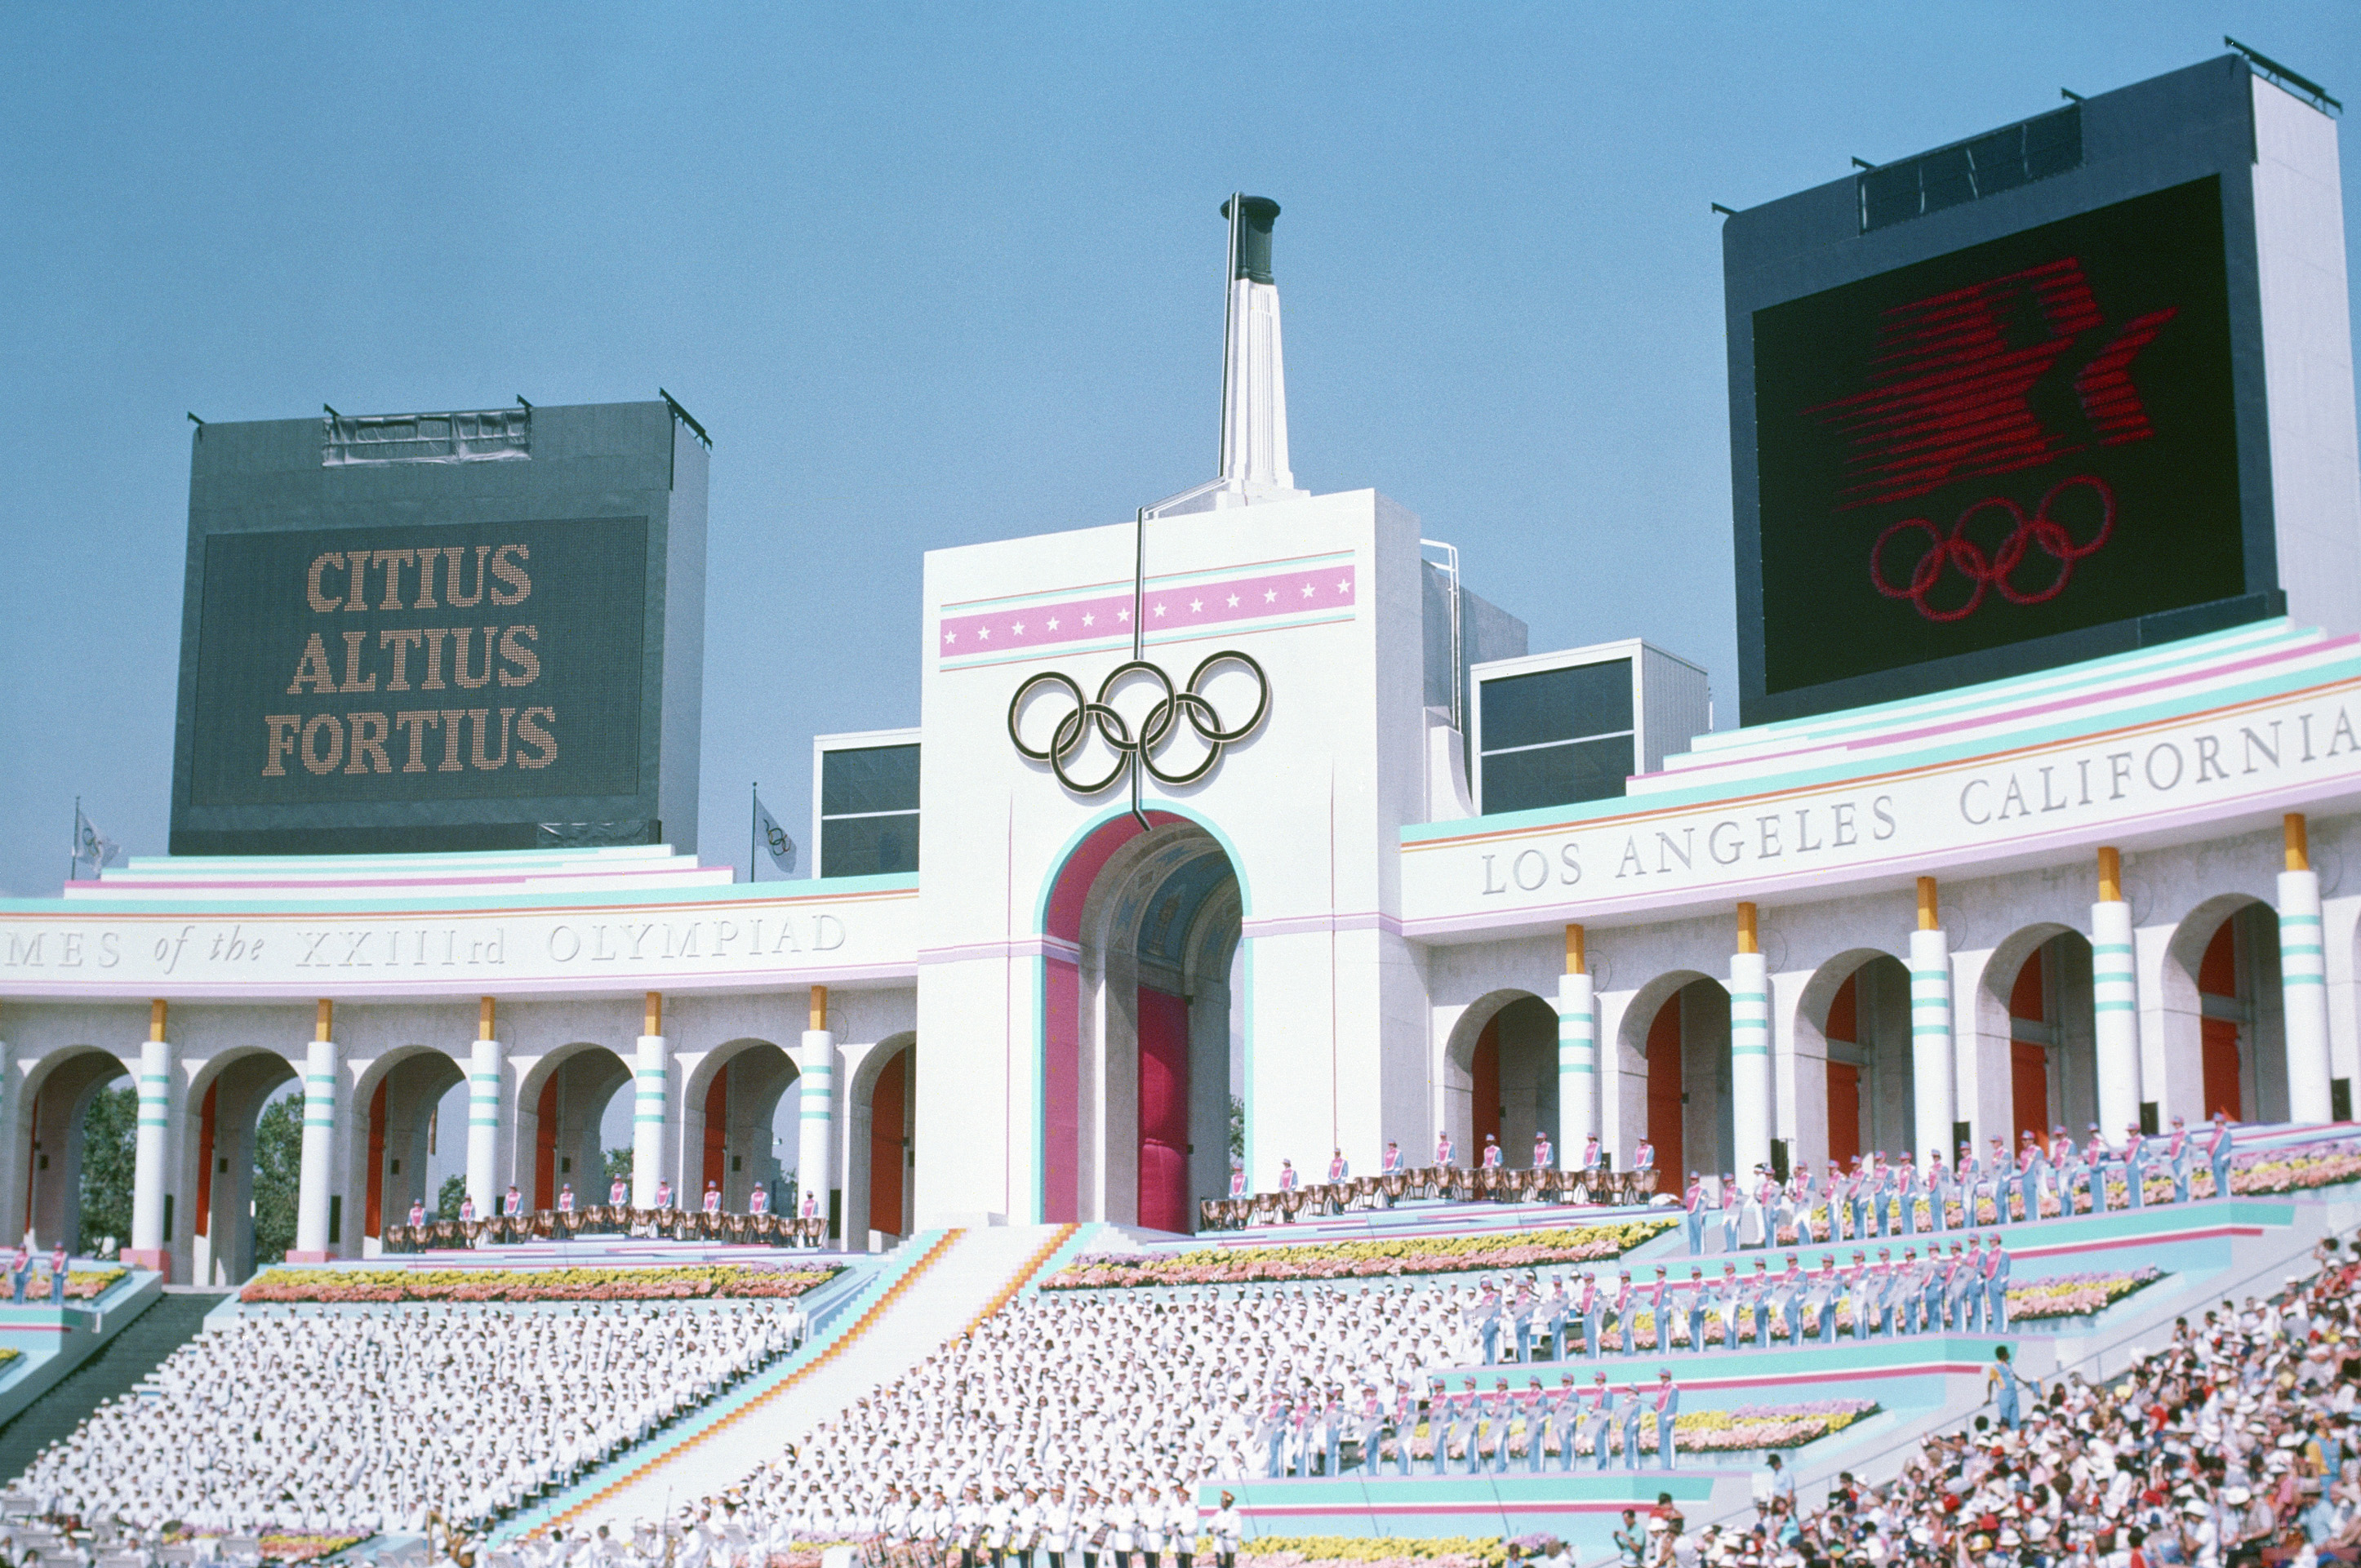 洛杉矶体育馆的奥运火炬塔照片